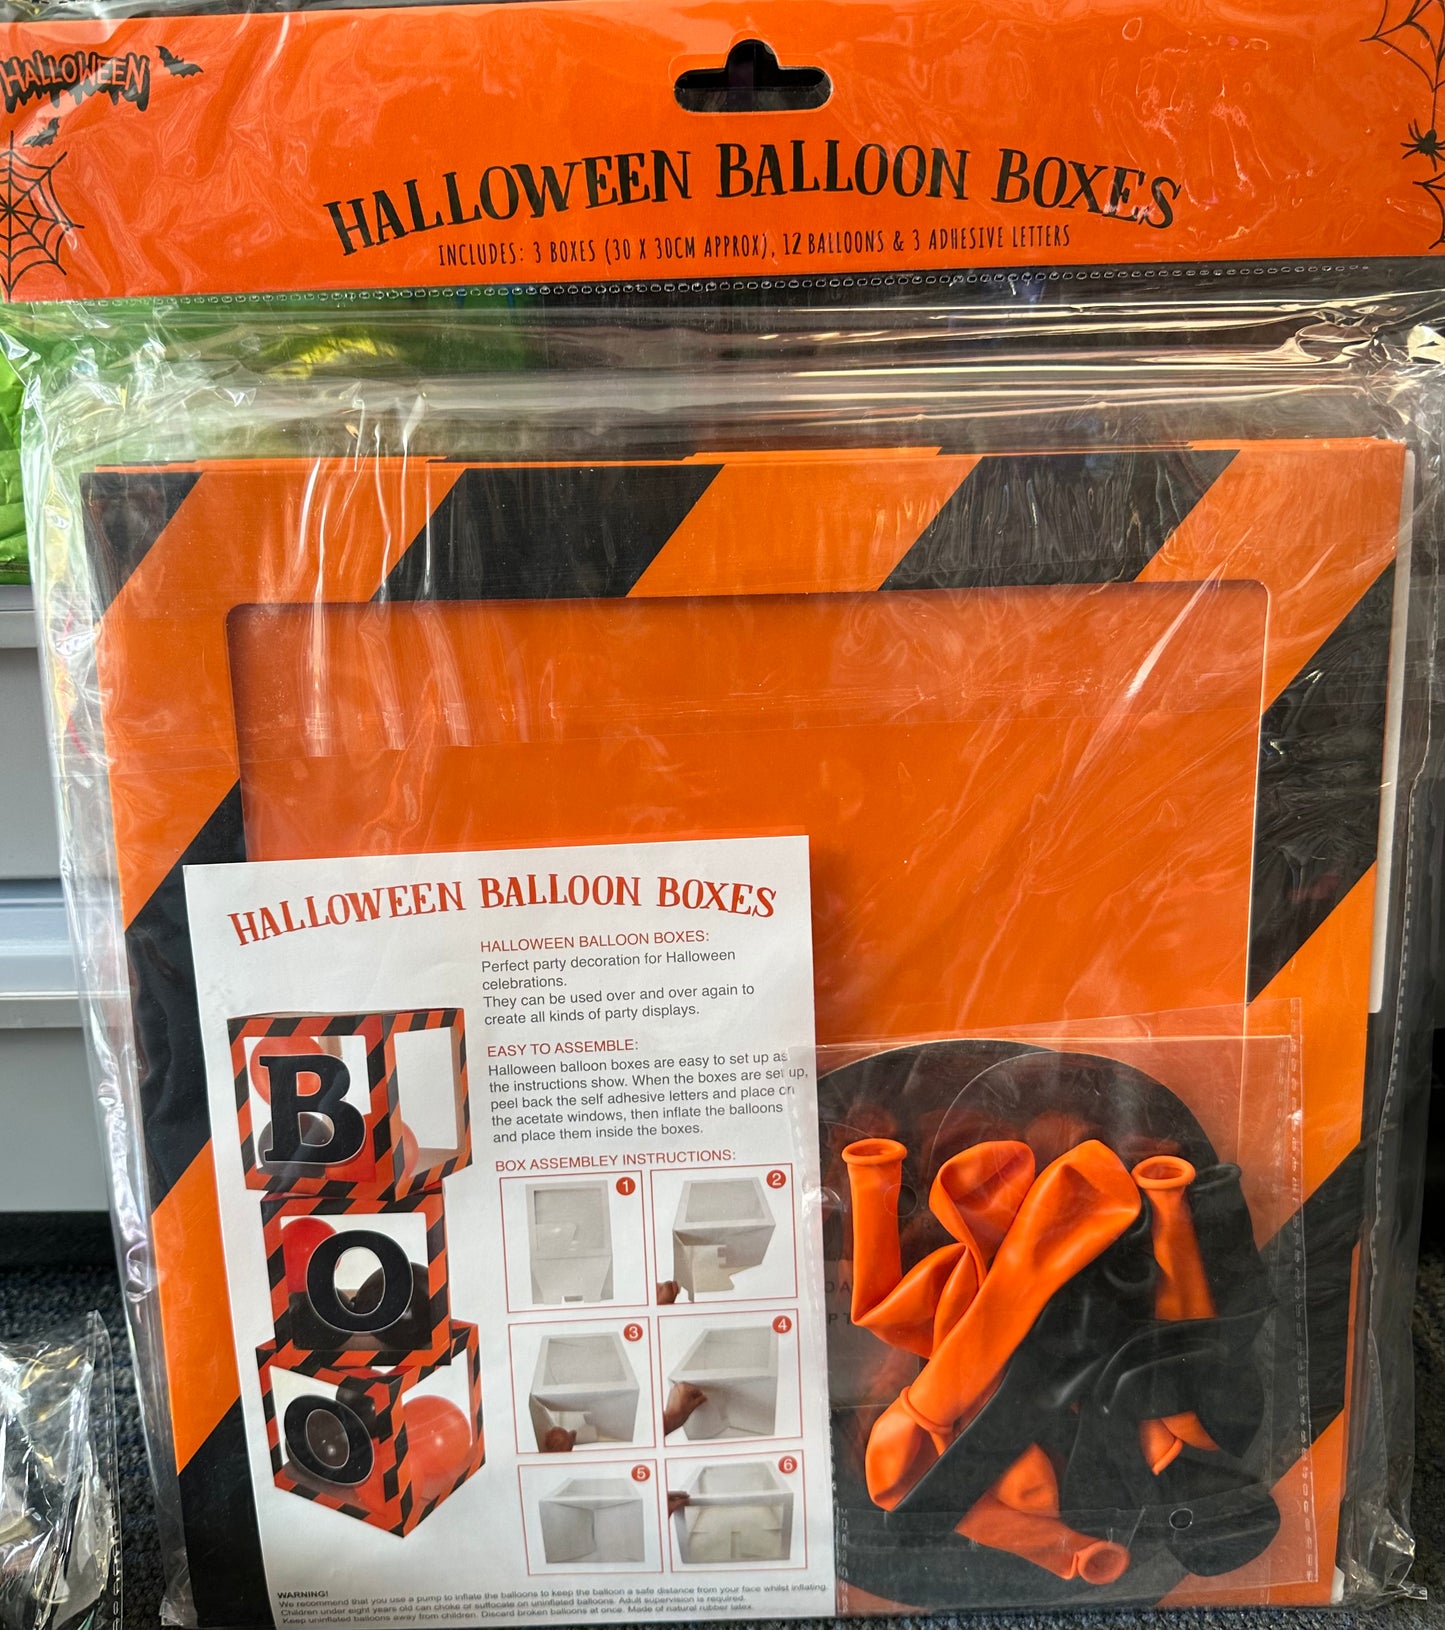 Halloween Balloon Box due around 18th August